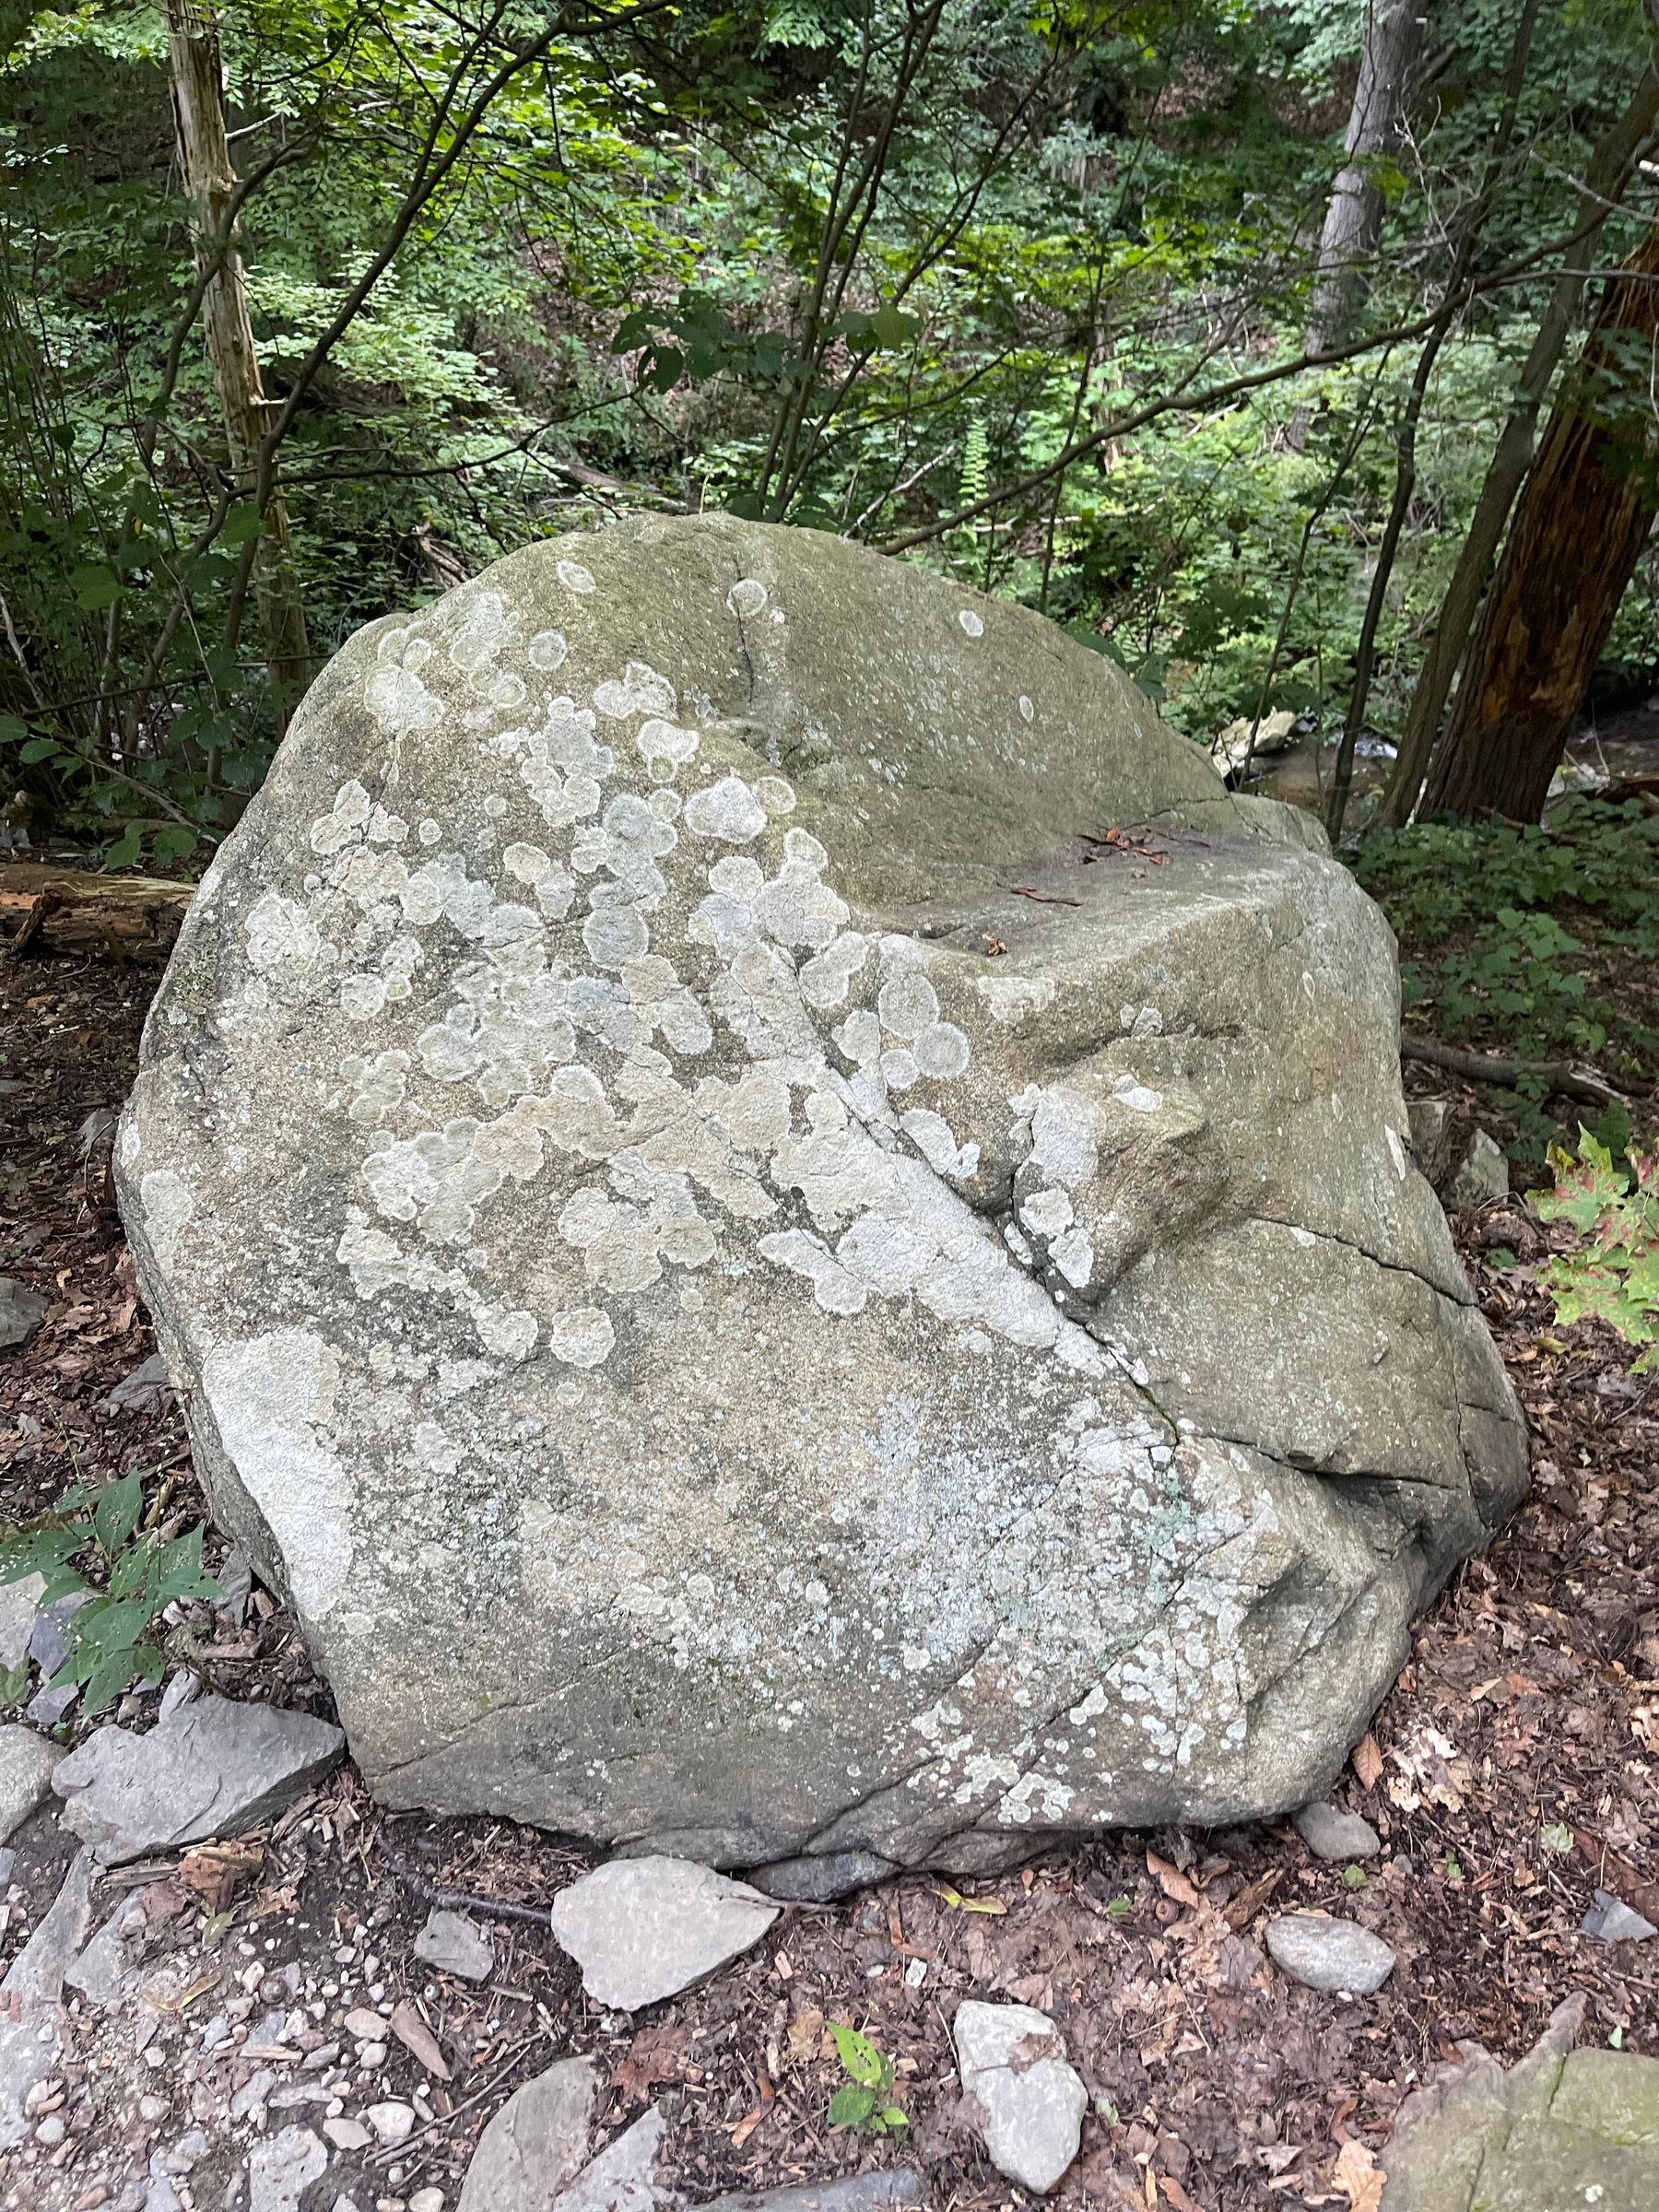 Boulder with lichen.